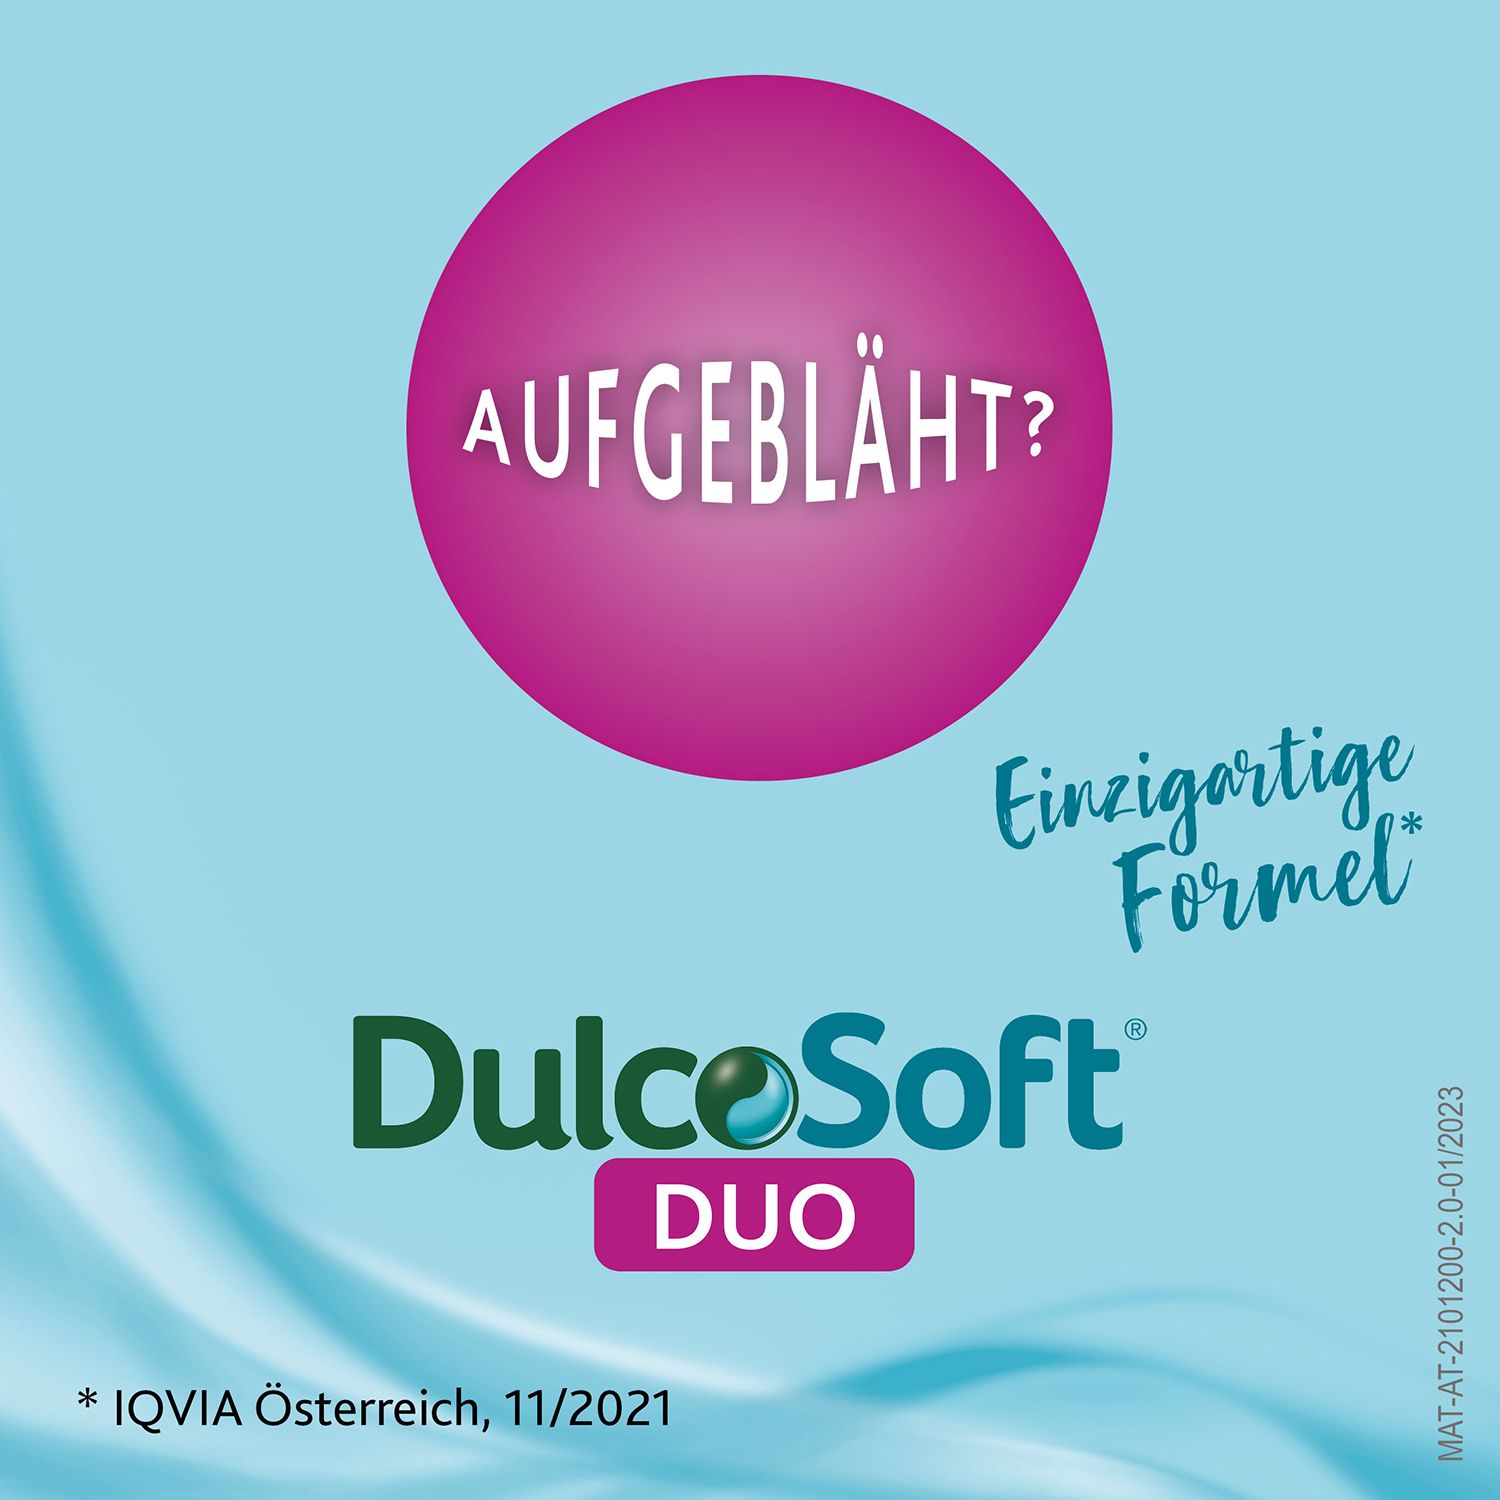 DulcoSoft® DUO - die Lösung bei hartem Stuhl und Blähungen